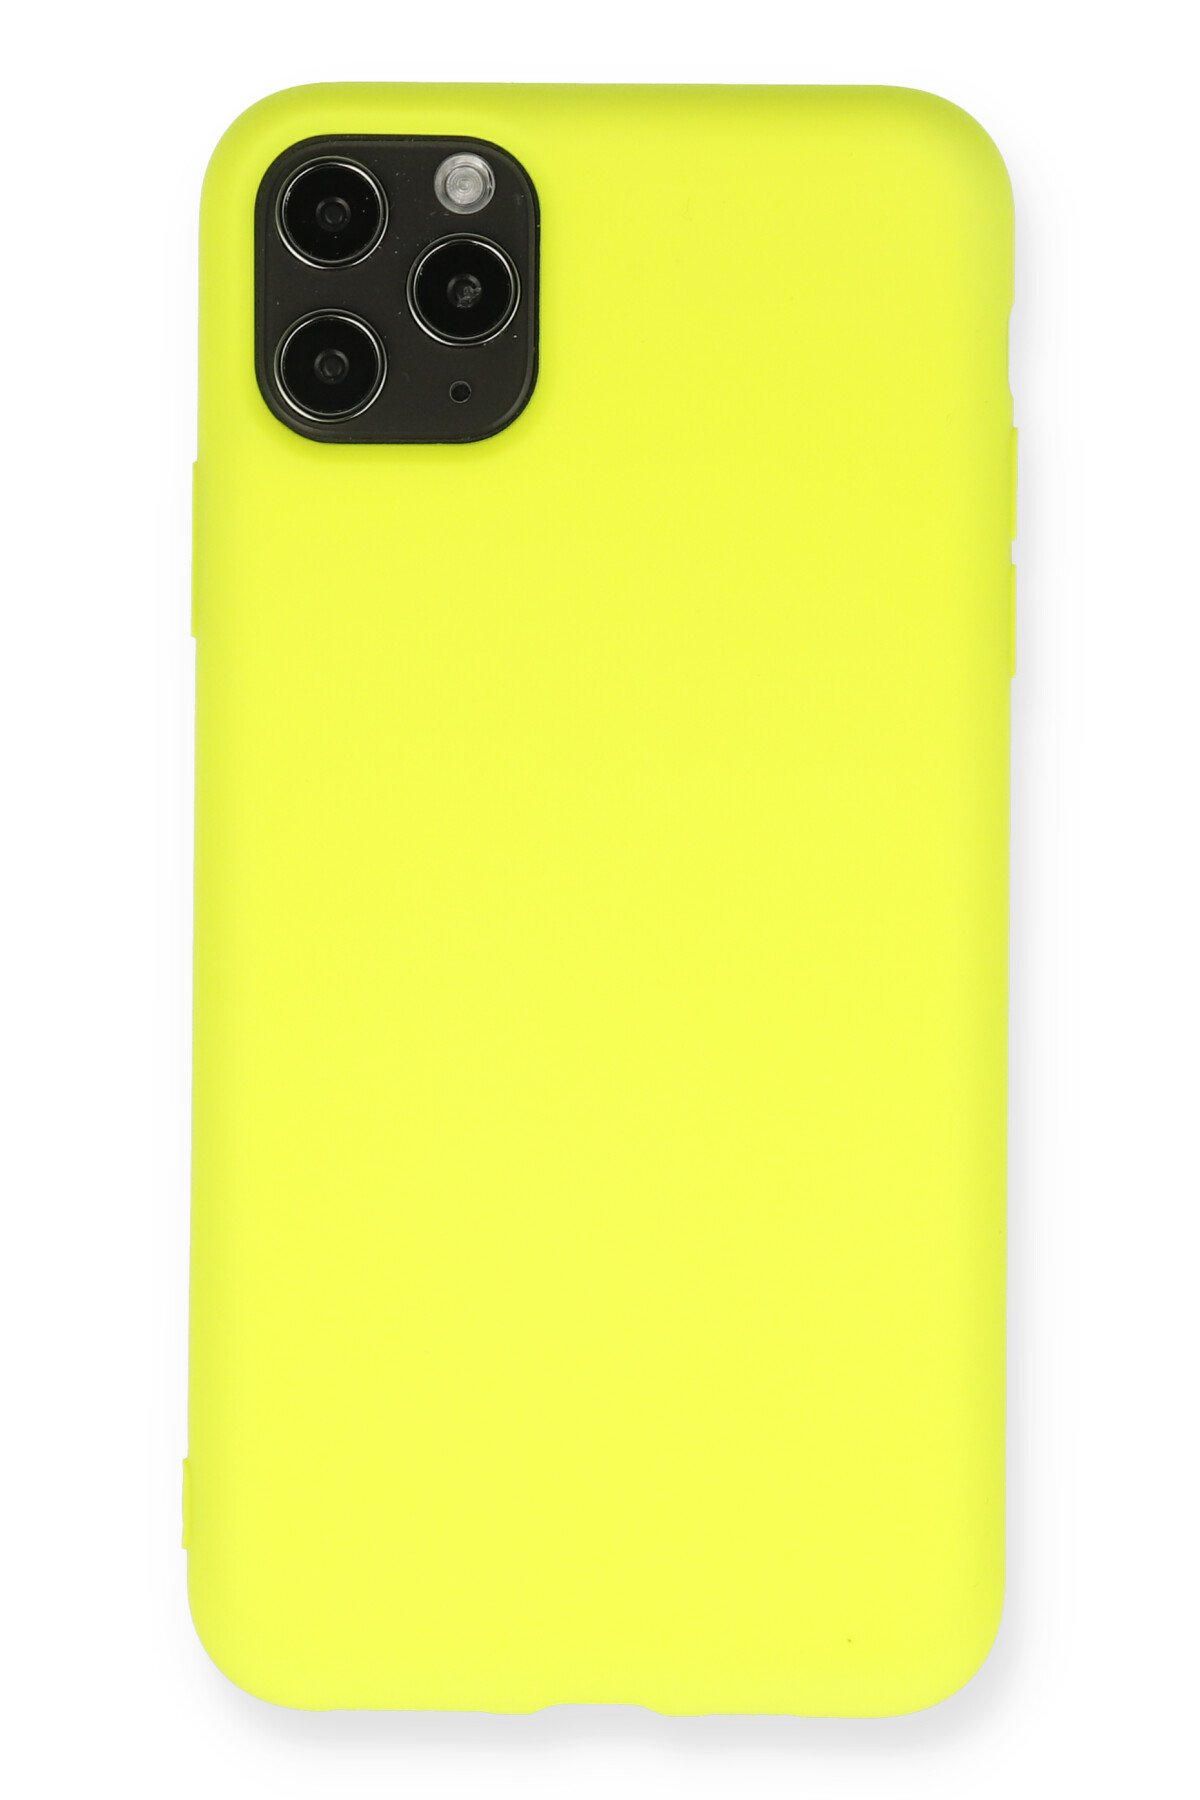 Newface iPhone 11 Pro Max Kılıf Miami Şeffaf Silikon - Koyu Yeşil